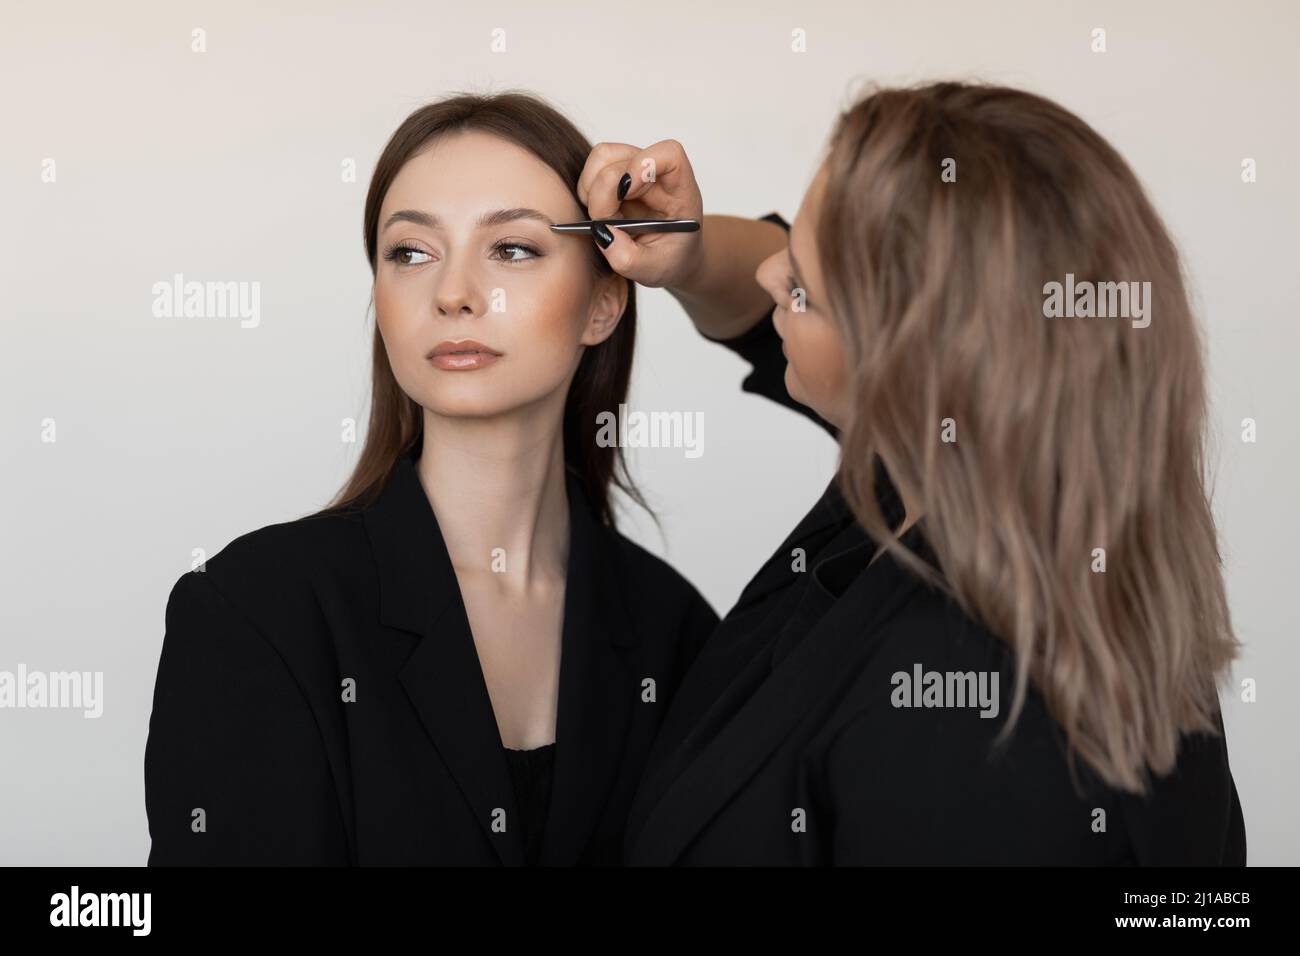 Professionelle attraktive Make-up-Künstler pinkiert Augenbrauen von jungen gut aussehende Frau Modell. Make-up, Werbung. Stockfoto